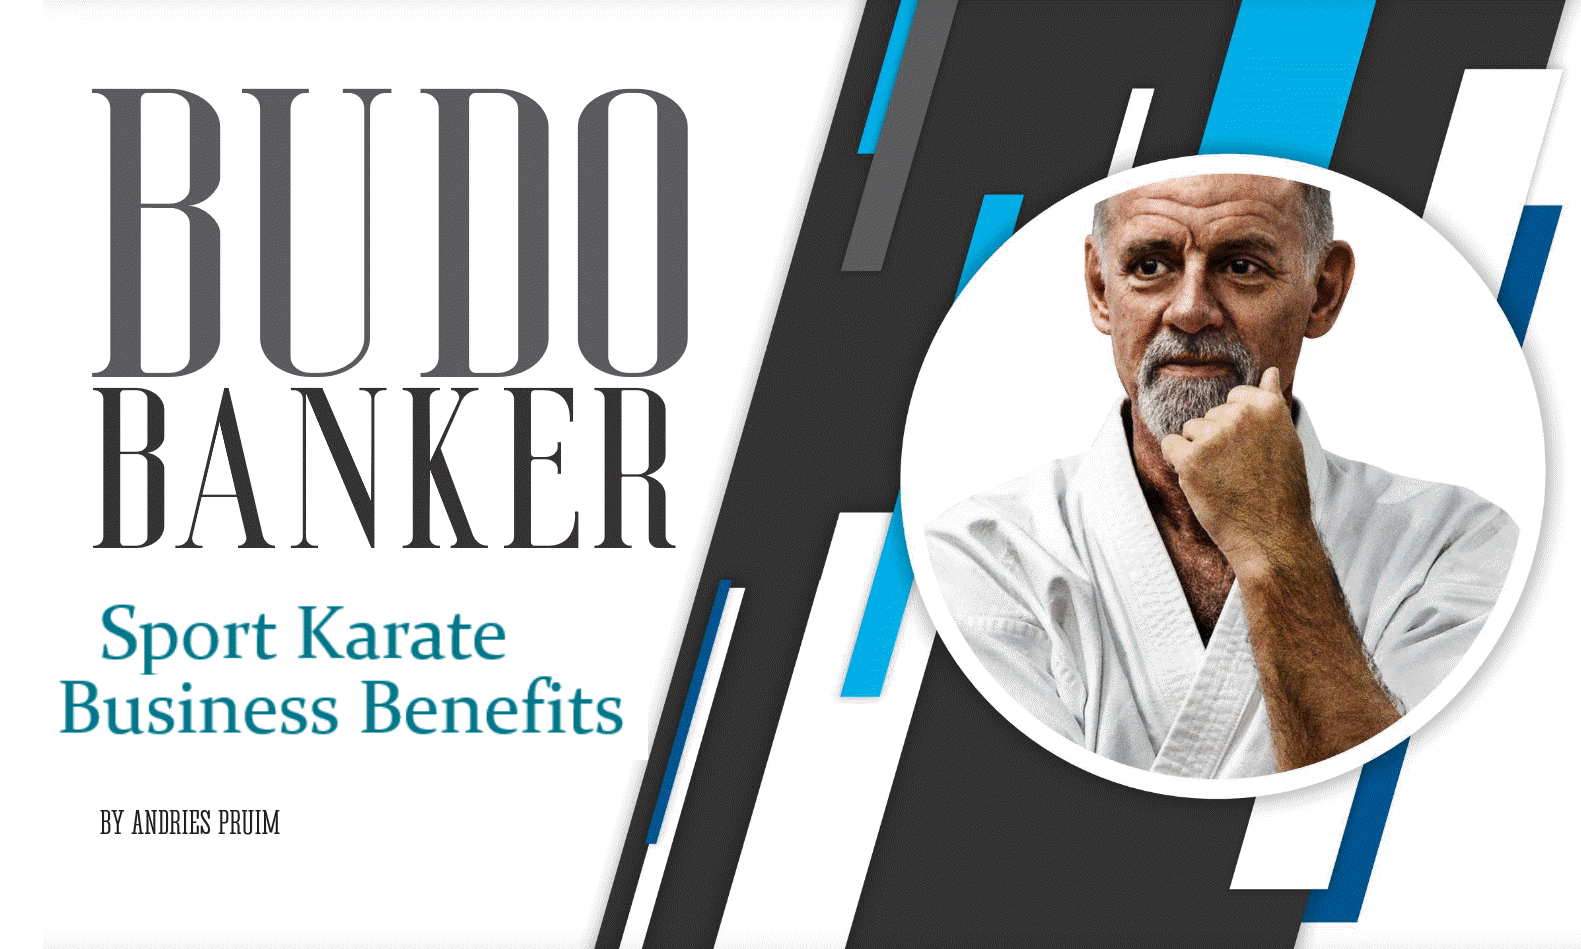 BudoBanker Sport Karate Business Benefits